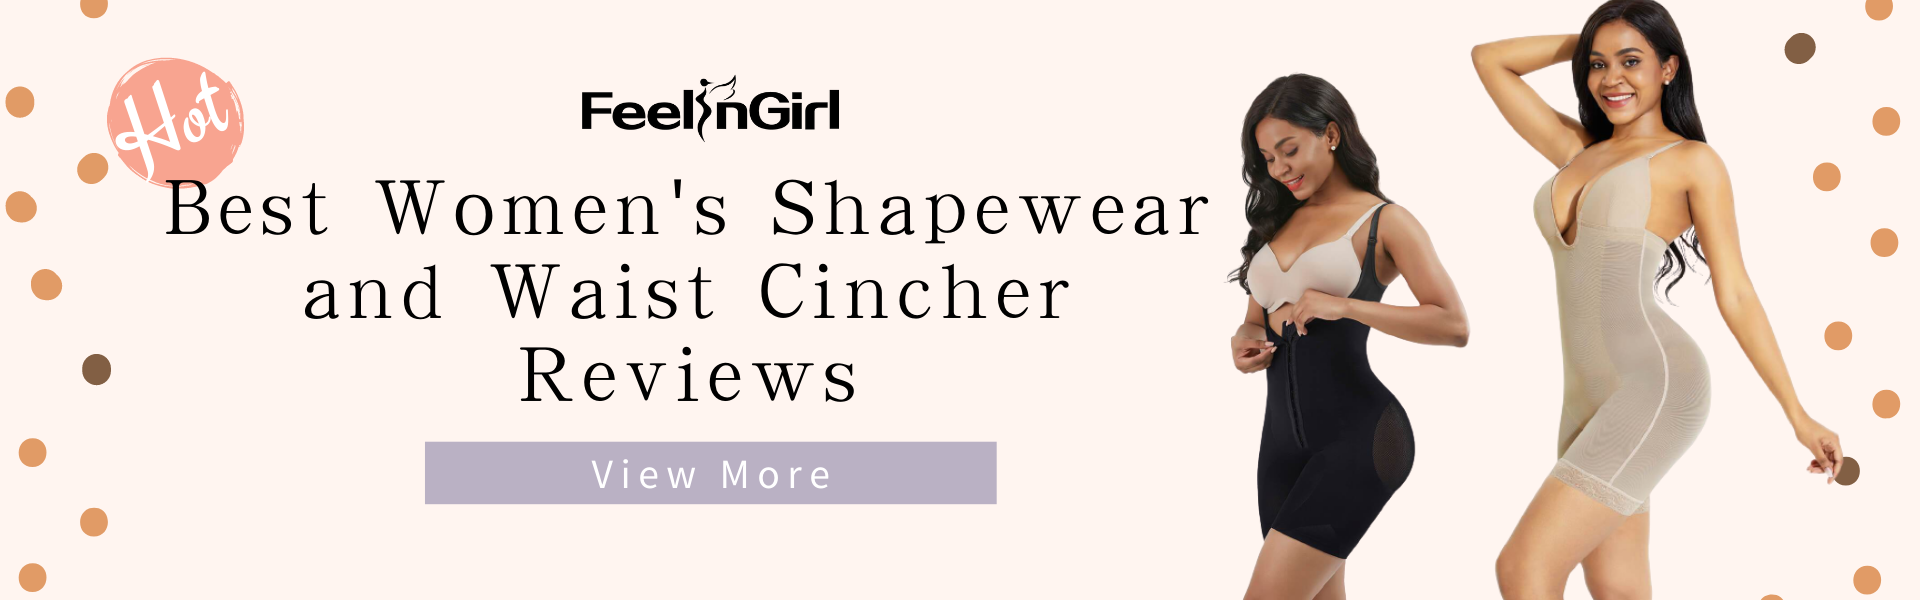 Best Women’s Shapewear and Waist Cincher Reviews